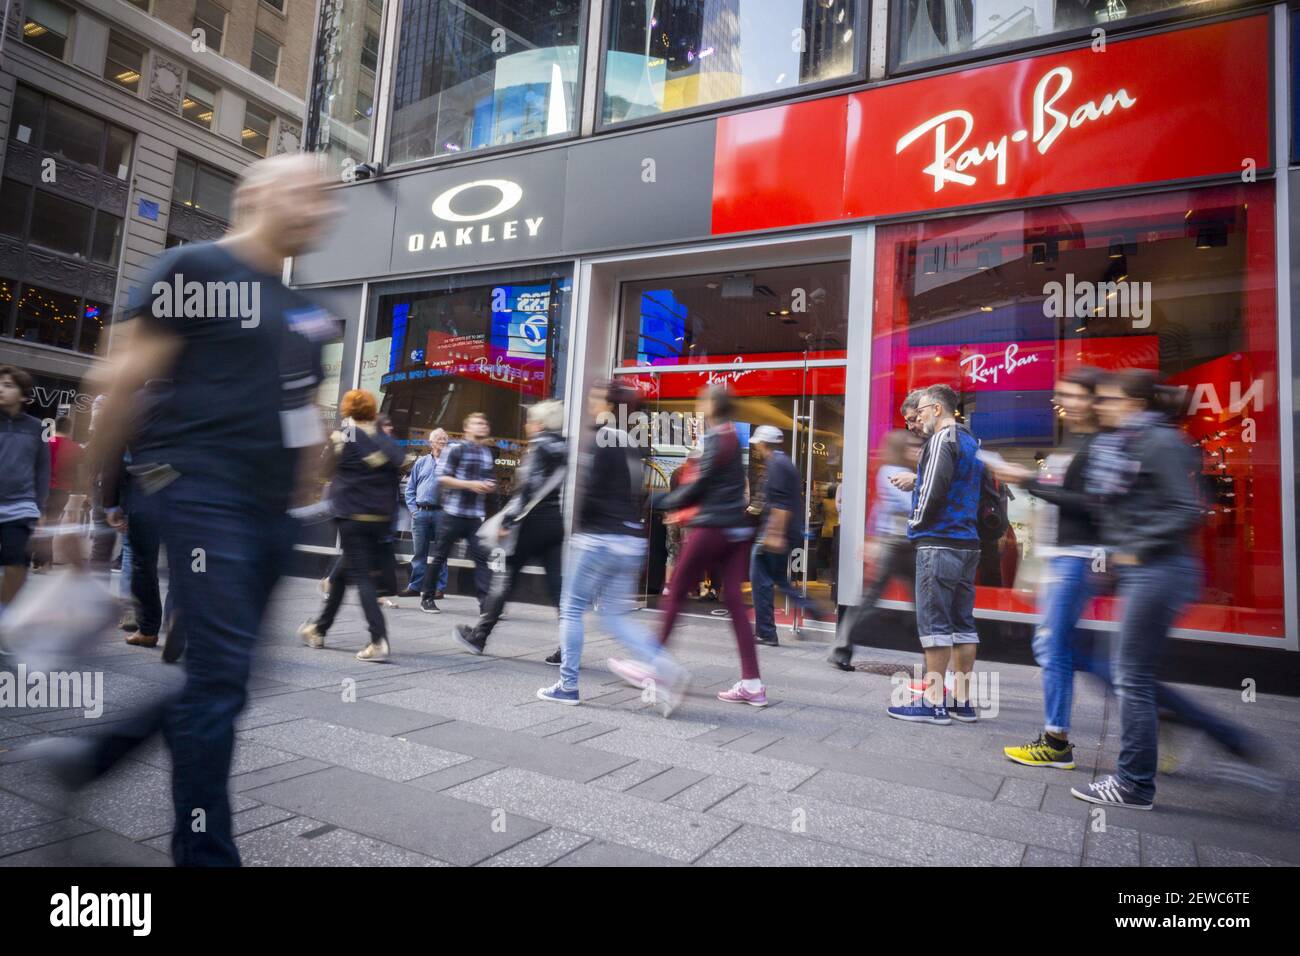 Les marques Luxottica Oakley et Ray-Ban partagent un magasin à Times Square  à New York le vendredi 29 septembre 2017. EssiliorLuxottica est déclaré  acheter une participation majoritaire dans la société néerlandaise  GrandVision